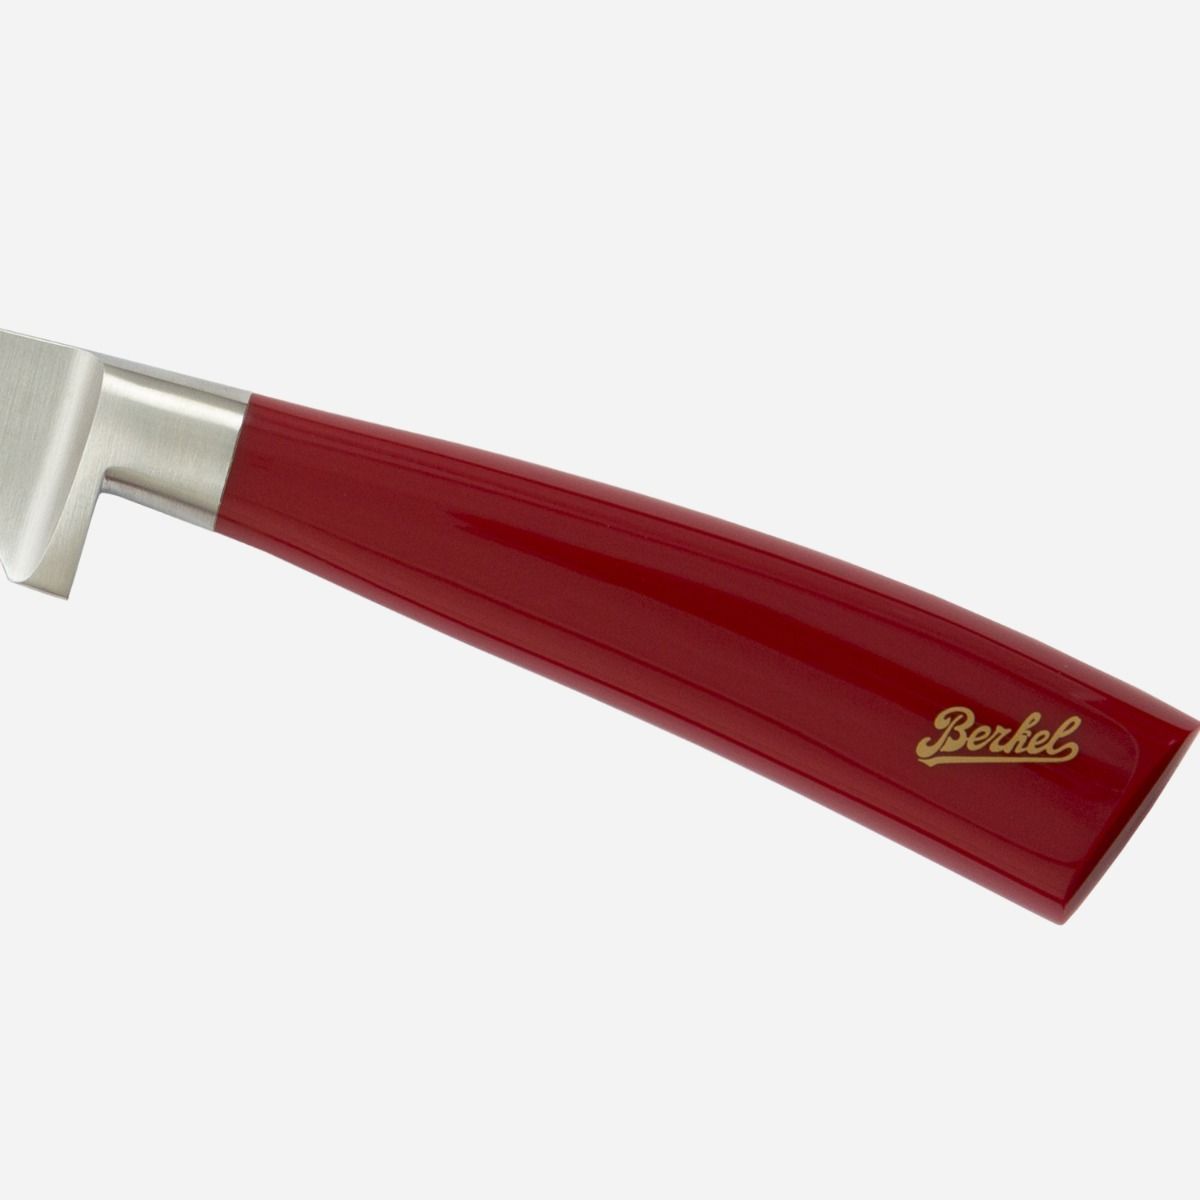 Berkel Elegance Bread Knife, Steel 22 cm handle